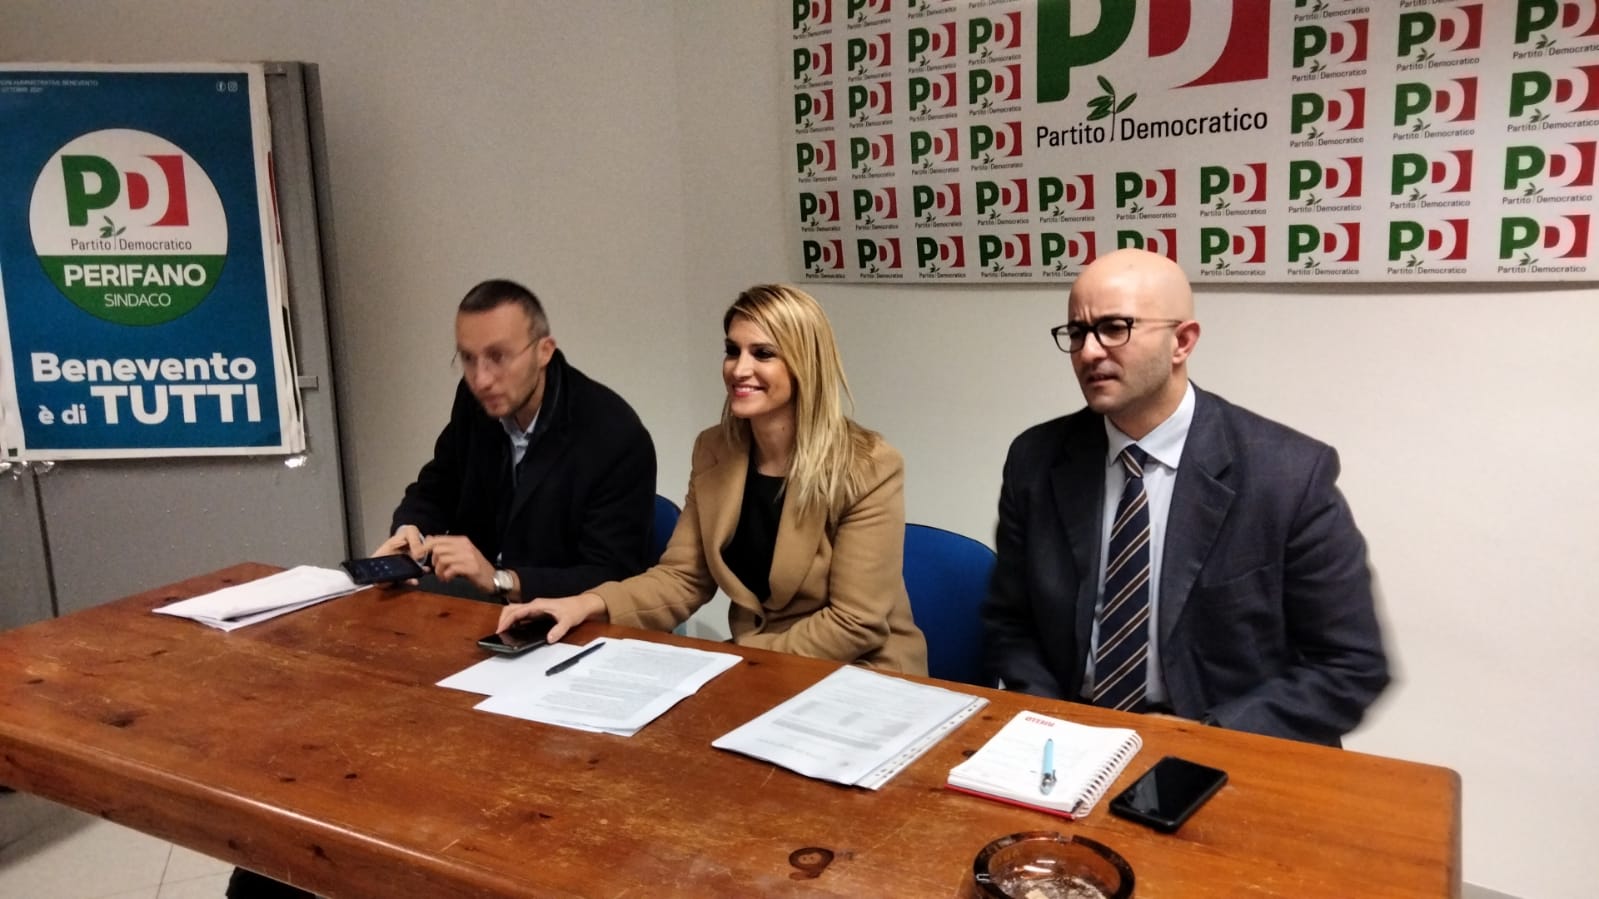 Benevento|Pnrr, il gruppo Pd: “Da opposizione apertura al confronto, da De Pierro le solite polemiche”